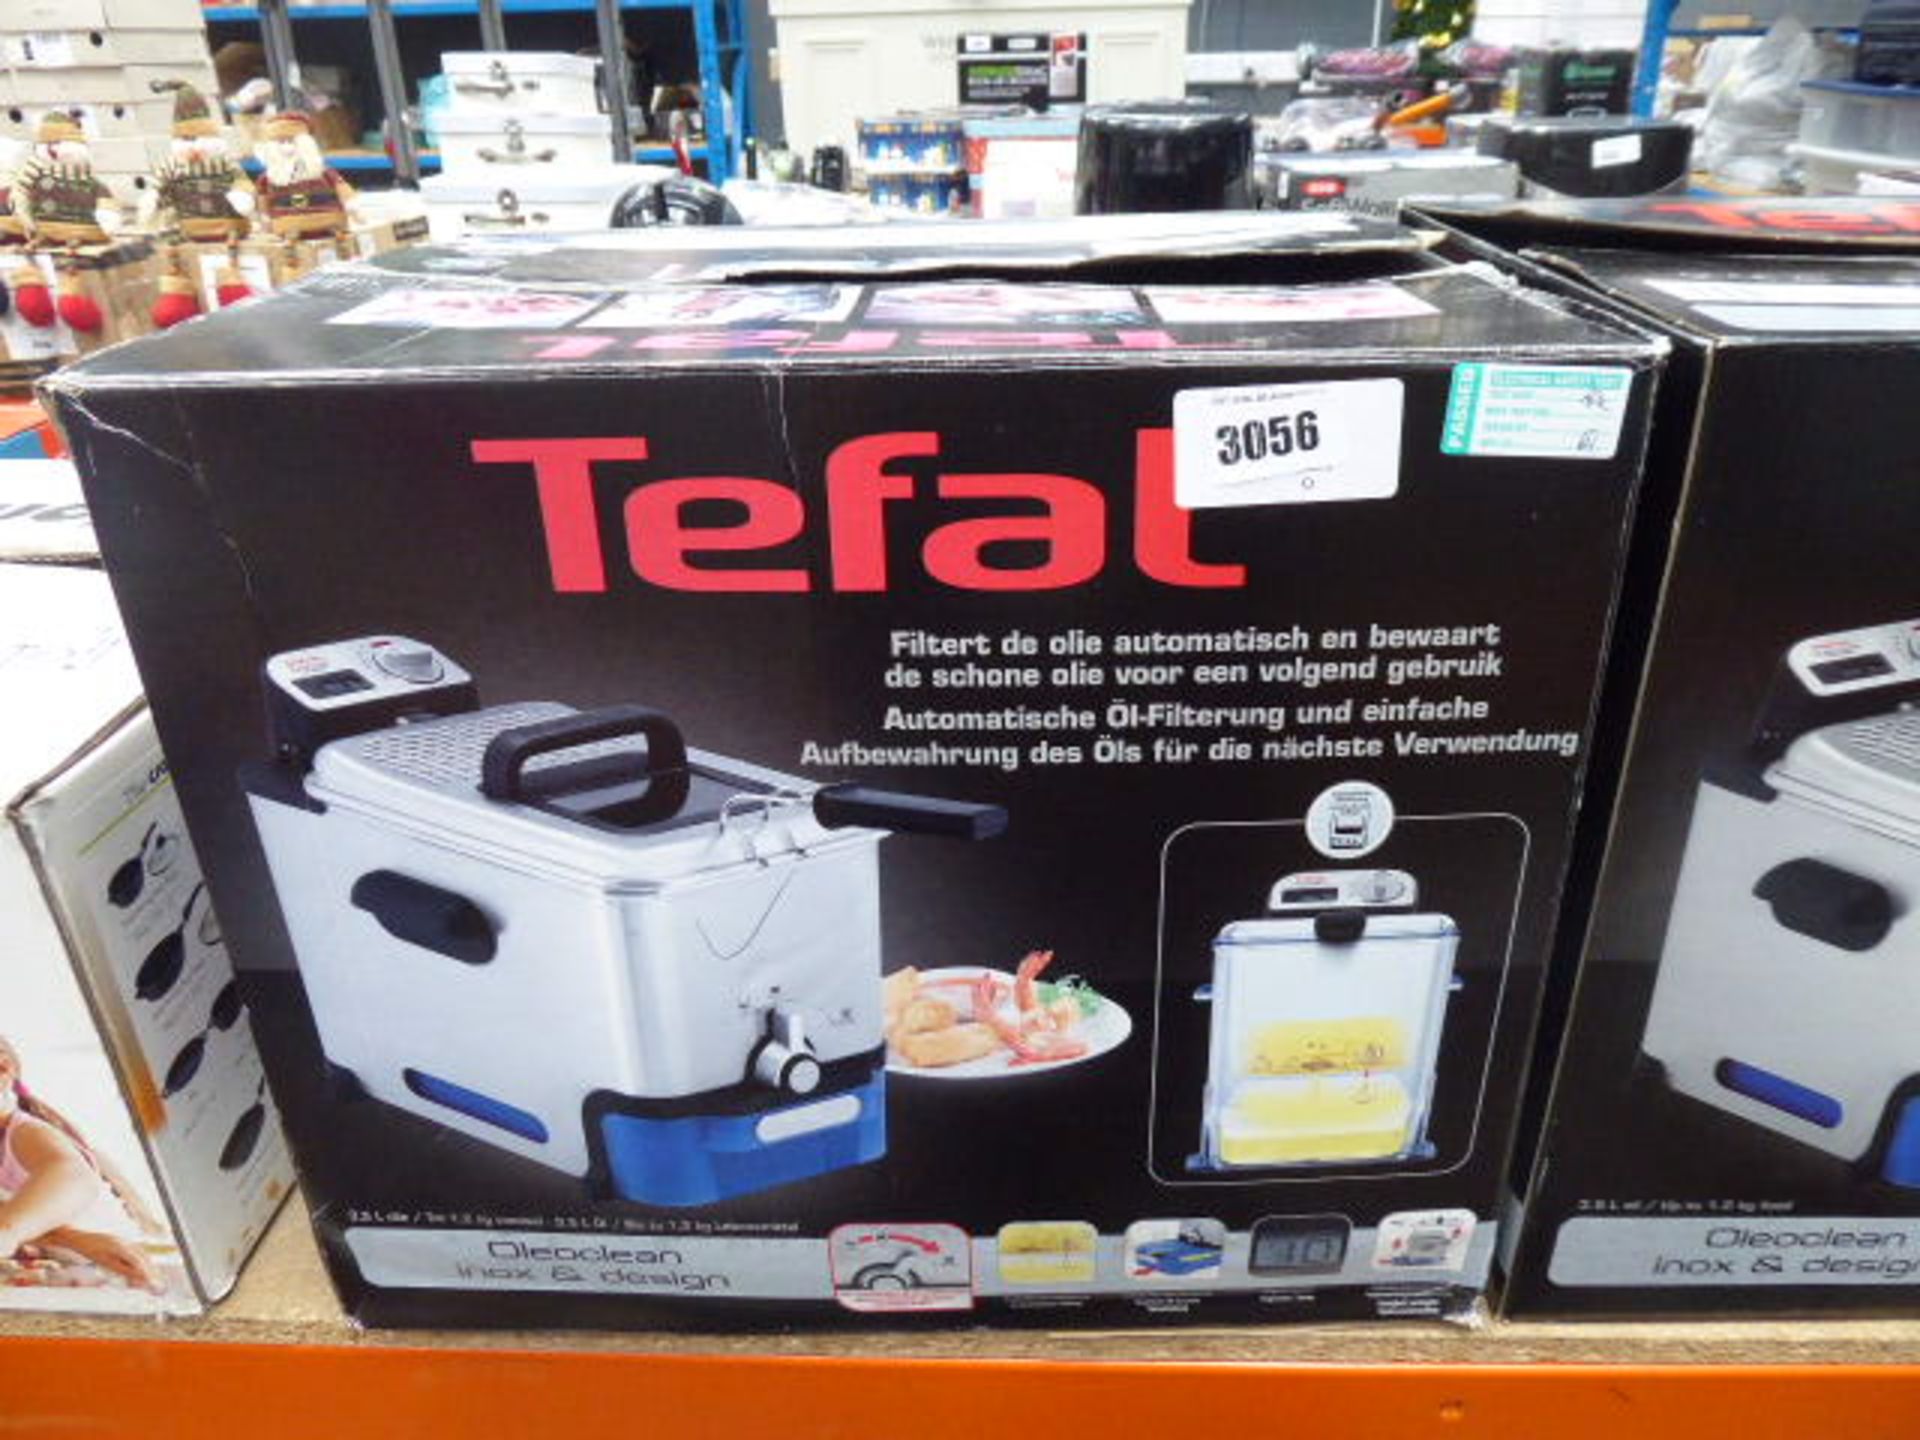 (61) Boxed Tefal filter fryer